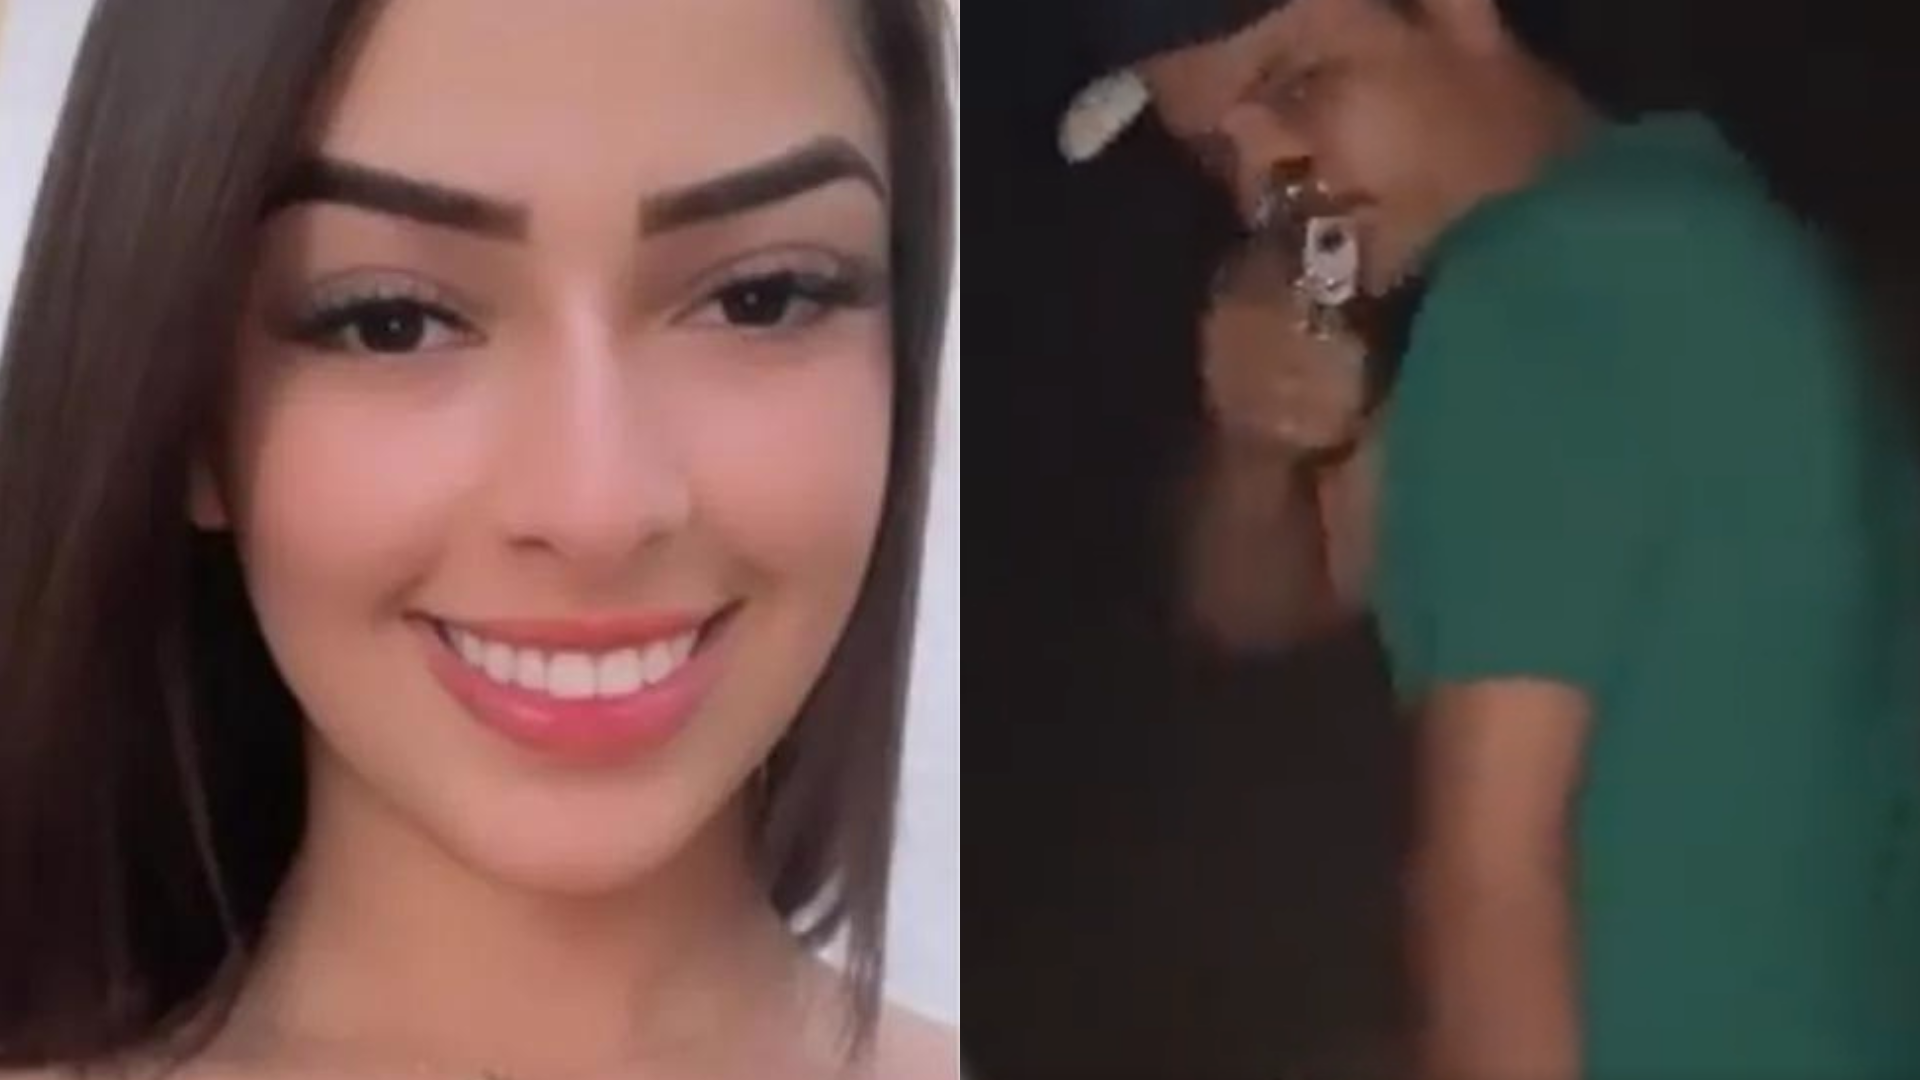 Jovem grava momento em que é morta a tiros pelo namorado, em Goiás; polícia achou vídeo em celular